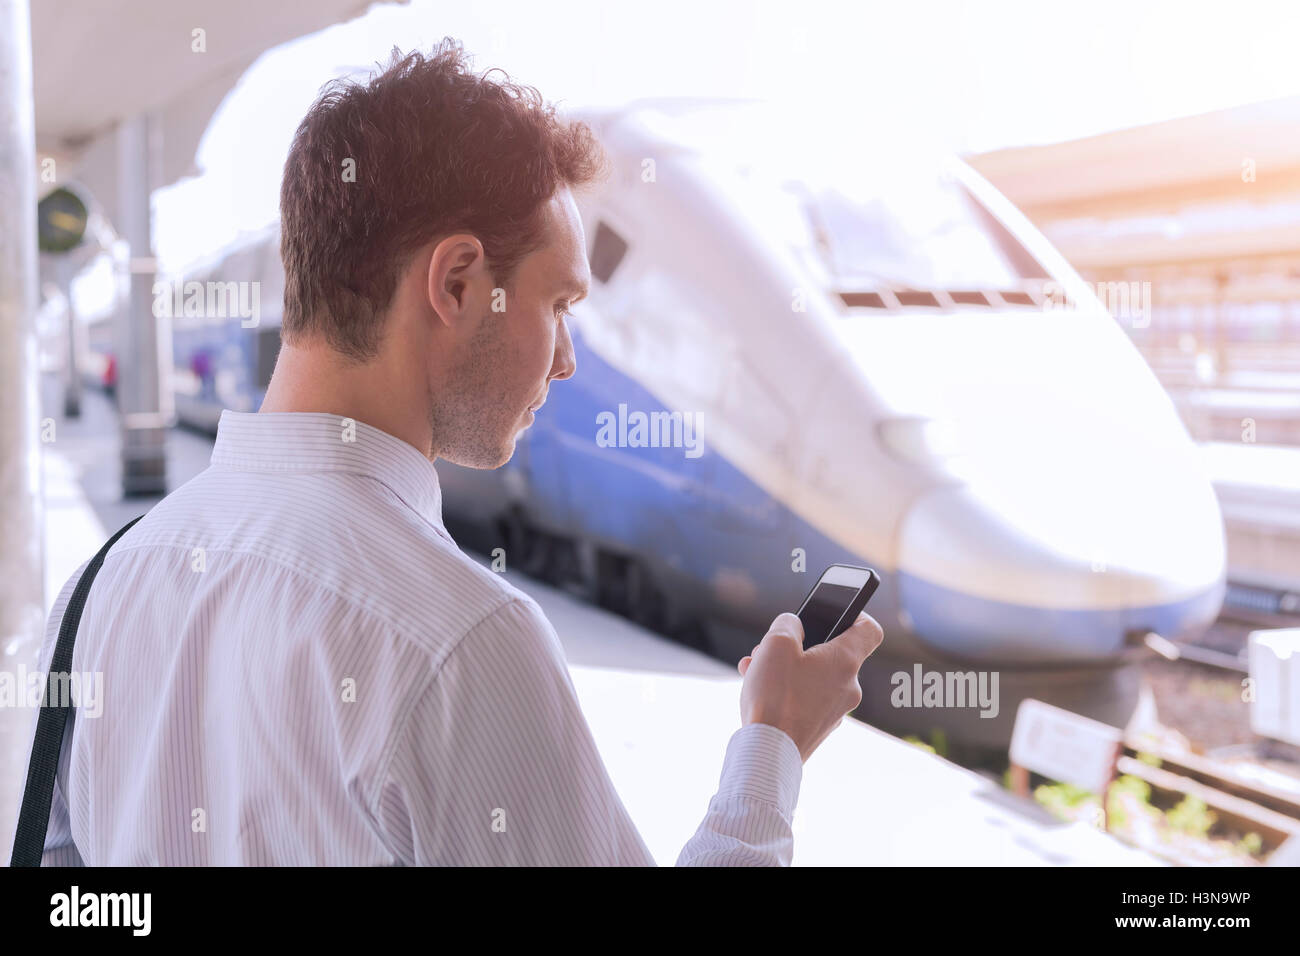 Les jeunes adultes de sexe masculin à l'aide de l'app sur smartphone pendant les voyages d'affaires avec le train en arrière-plan Banque D'Images